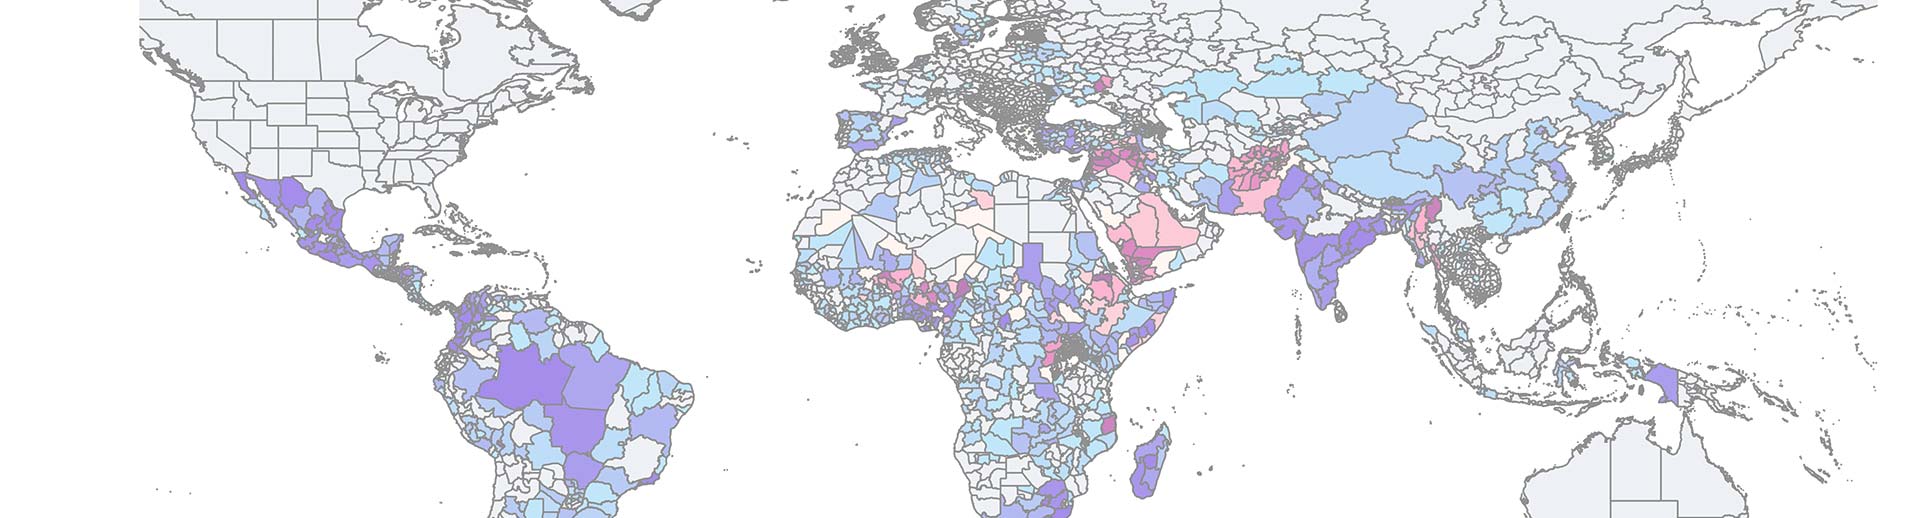 Der internationale Risikoindikator für politische Risiken ist auf einer Weltkarte eingezeichnet, mit verschiedenen Farben für verschiedene Werte des Indexes.